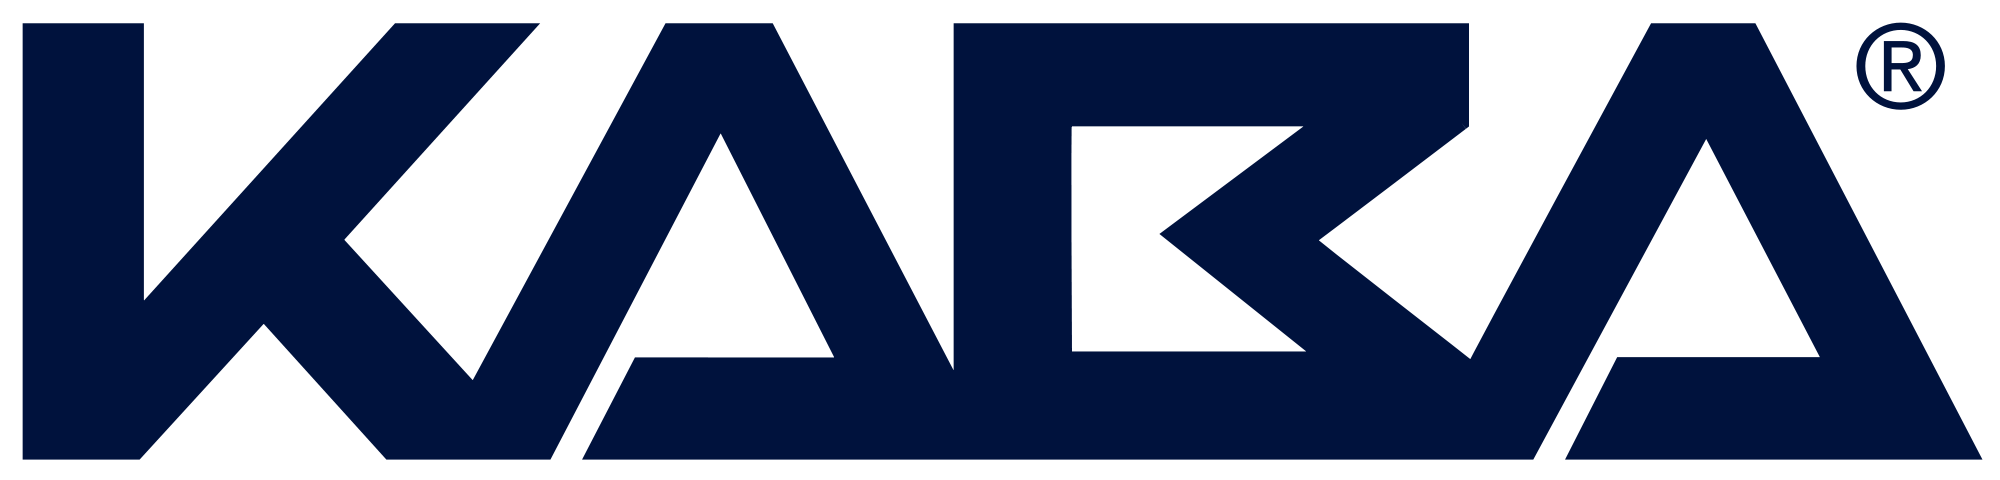 logo Kabba